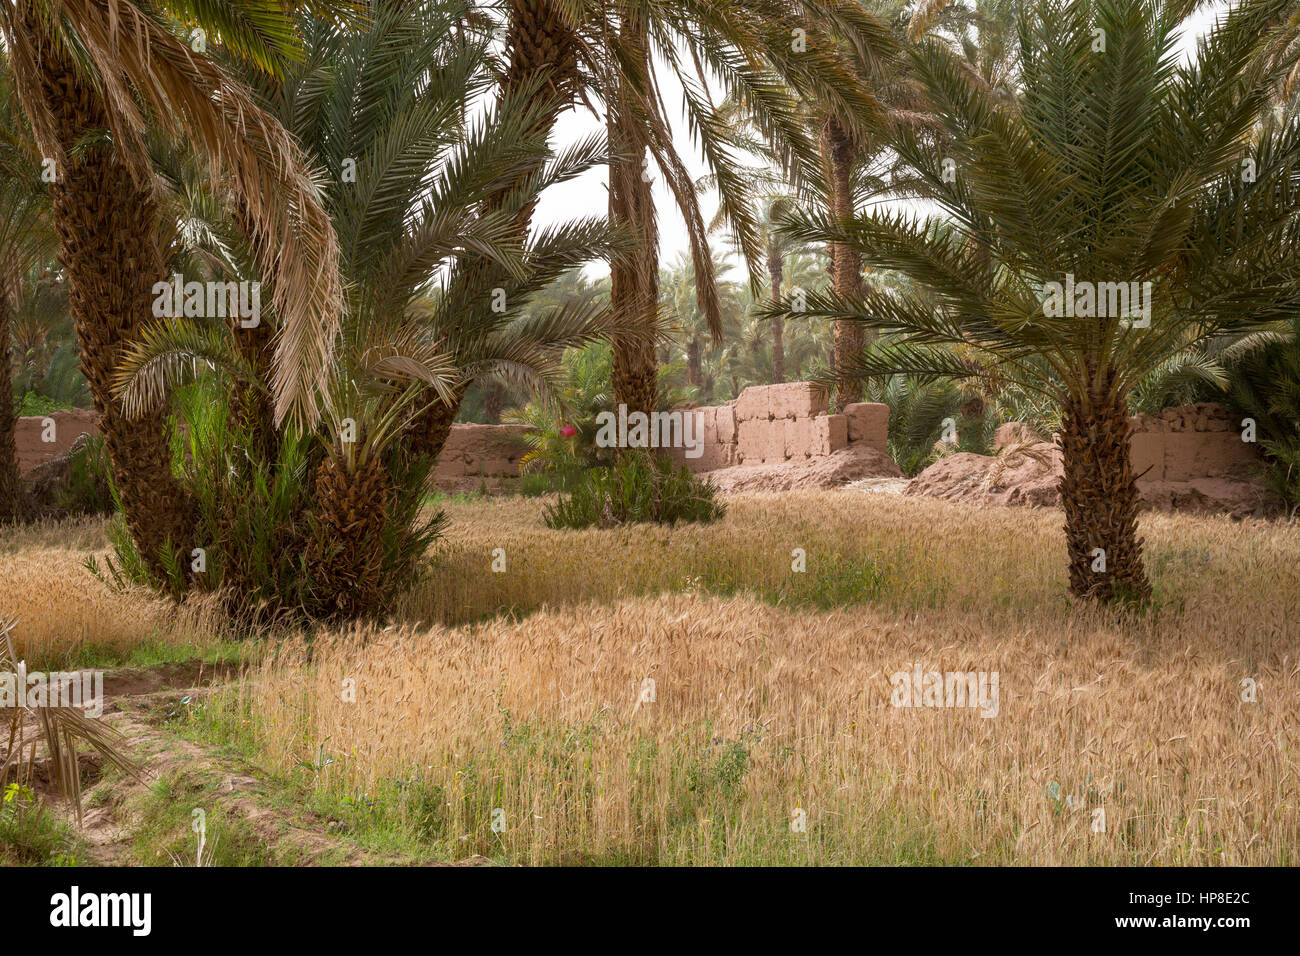 Zagora, Maroc. La culture du blé dans de petites parcelles agricoles. Banque D'Images